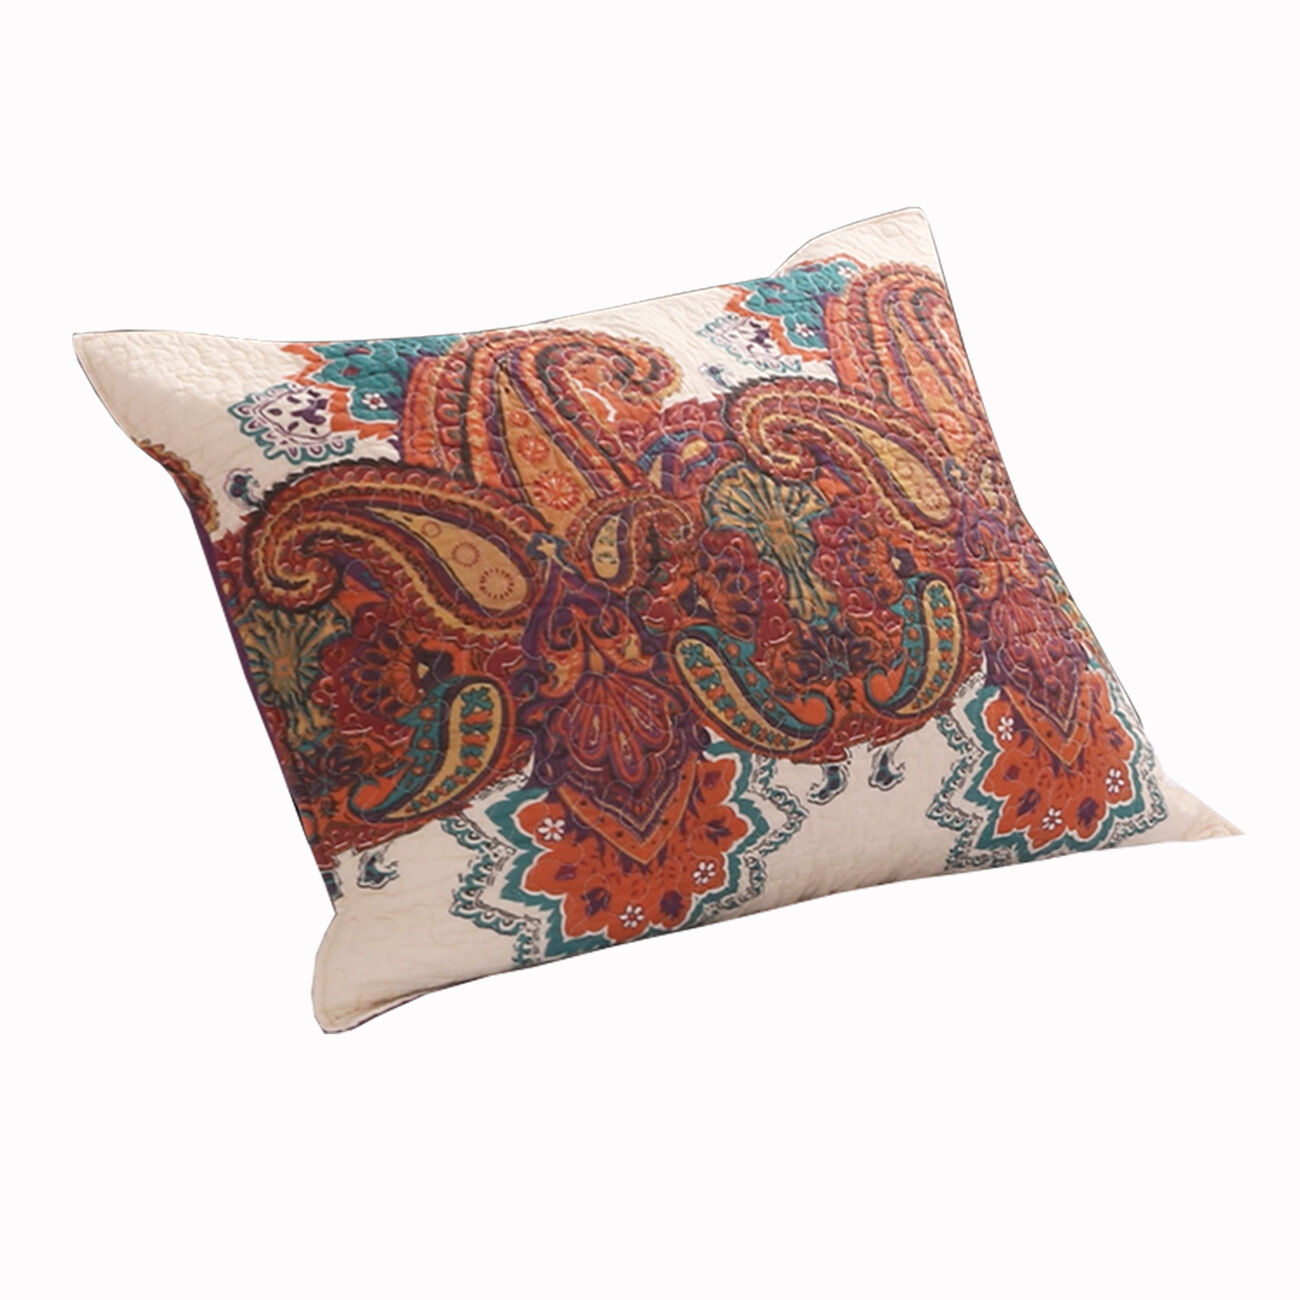 36 x 20 King Cotton Pillow Sham with Jacobean Print, Multicolor - BM223399